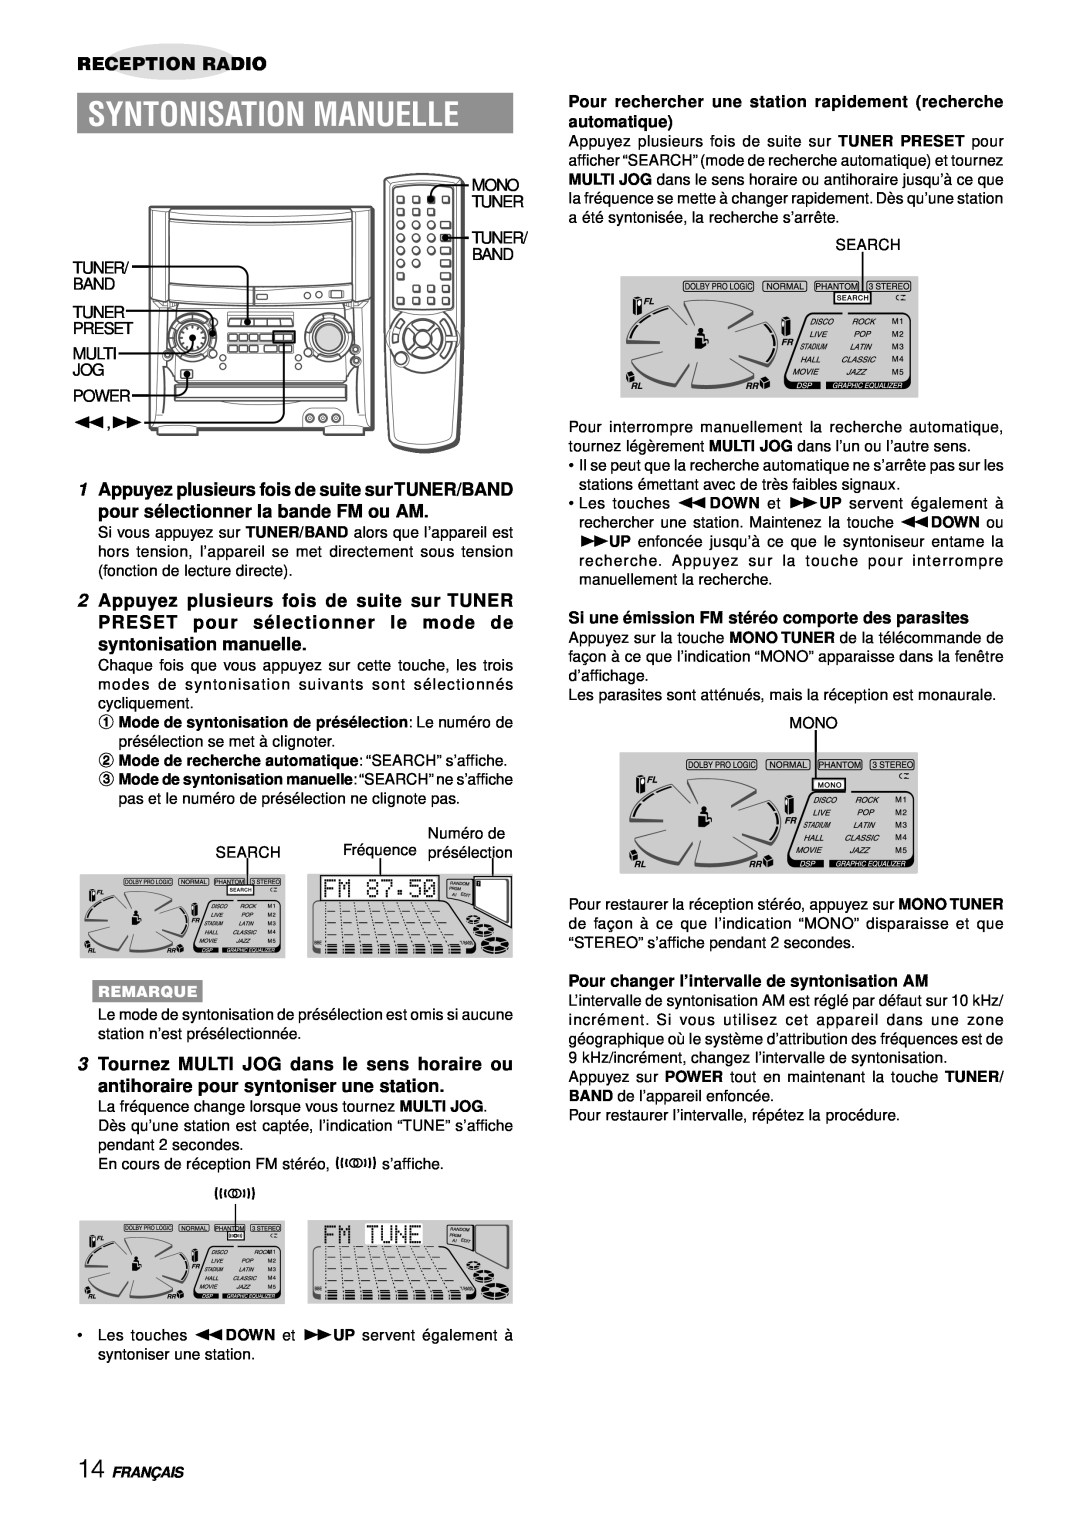 Aiwa XH-A1000 manual Syntonisation Manuelle, 1Appuyez plusieurs fois de suite sur TUNER/BAND, Reception Radio 